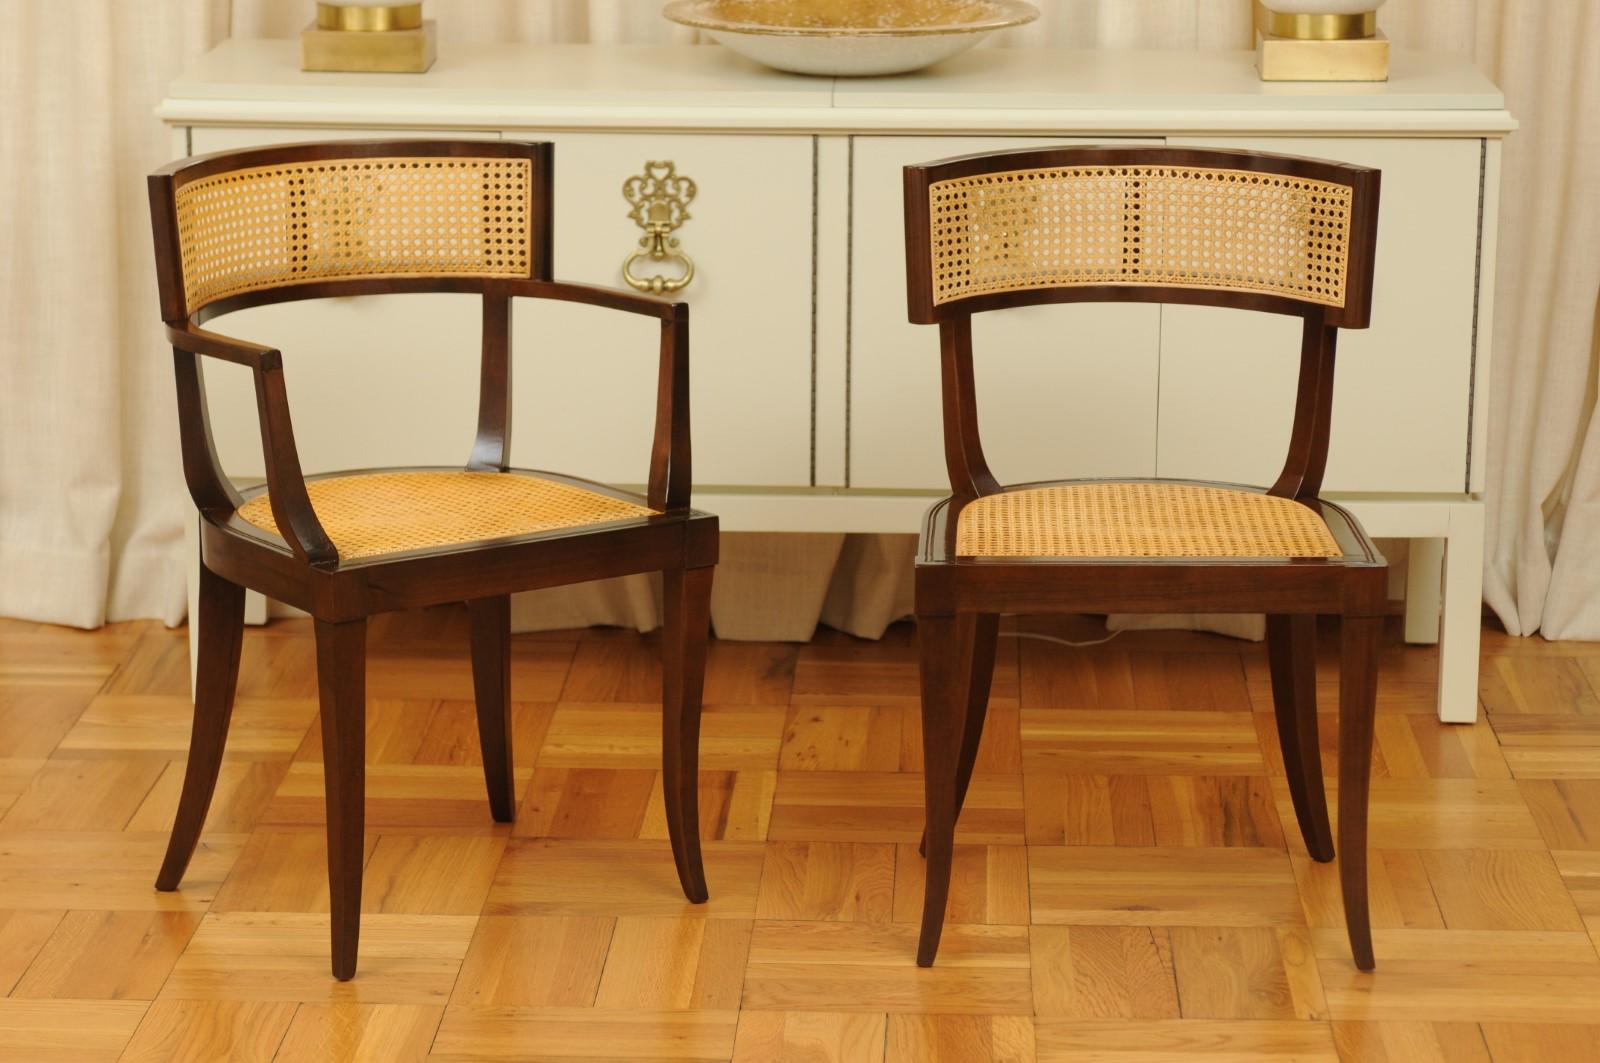 Ces magnifiques chaises de salle à manger sont expédiées telles qu'elles ont été photographiées par des professionnels et décrites dans le texte de l'annonce : Méticuleusement restaurées par des professionnels et prêtes à être installées. Un service